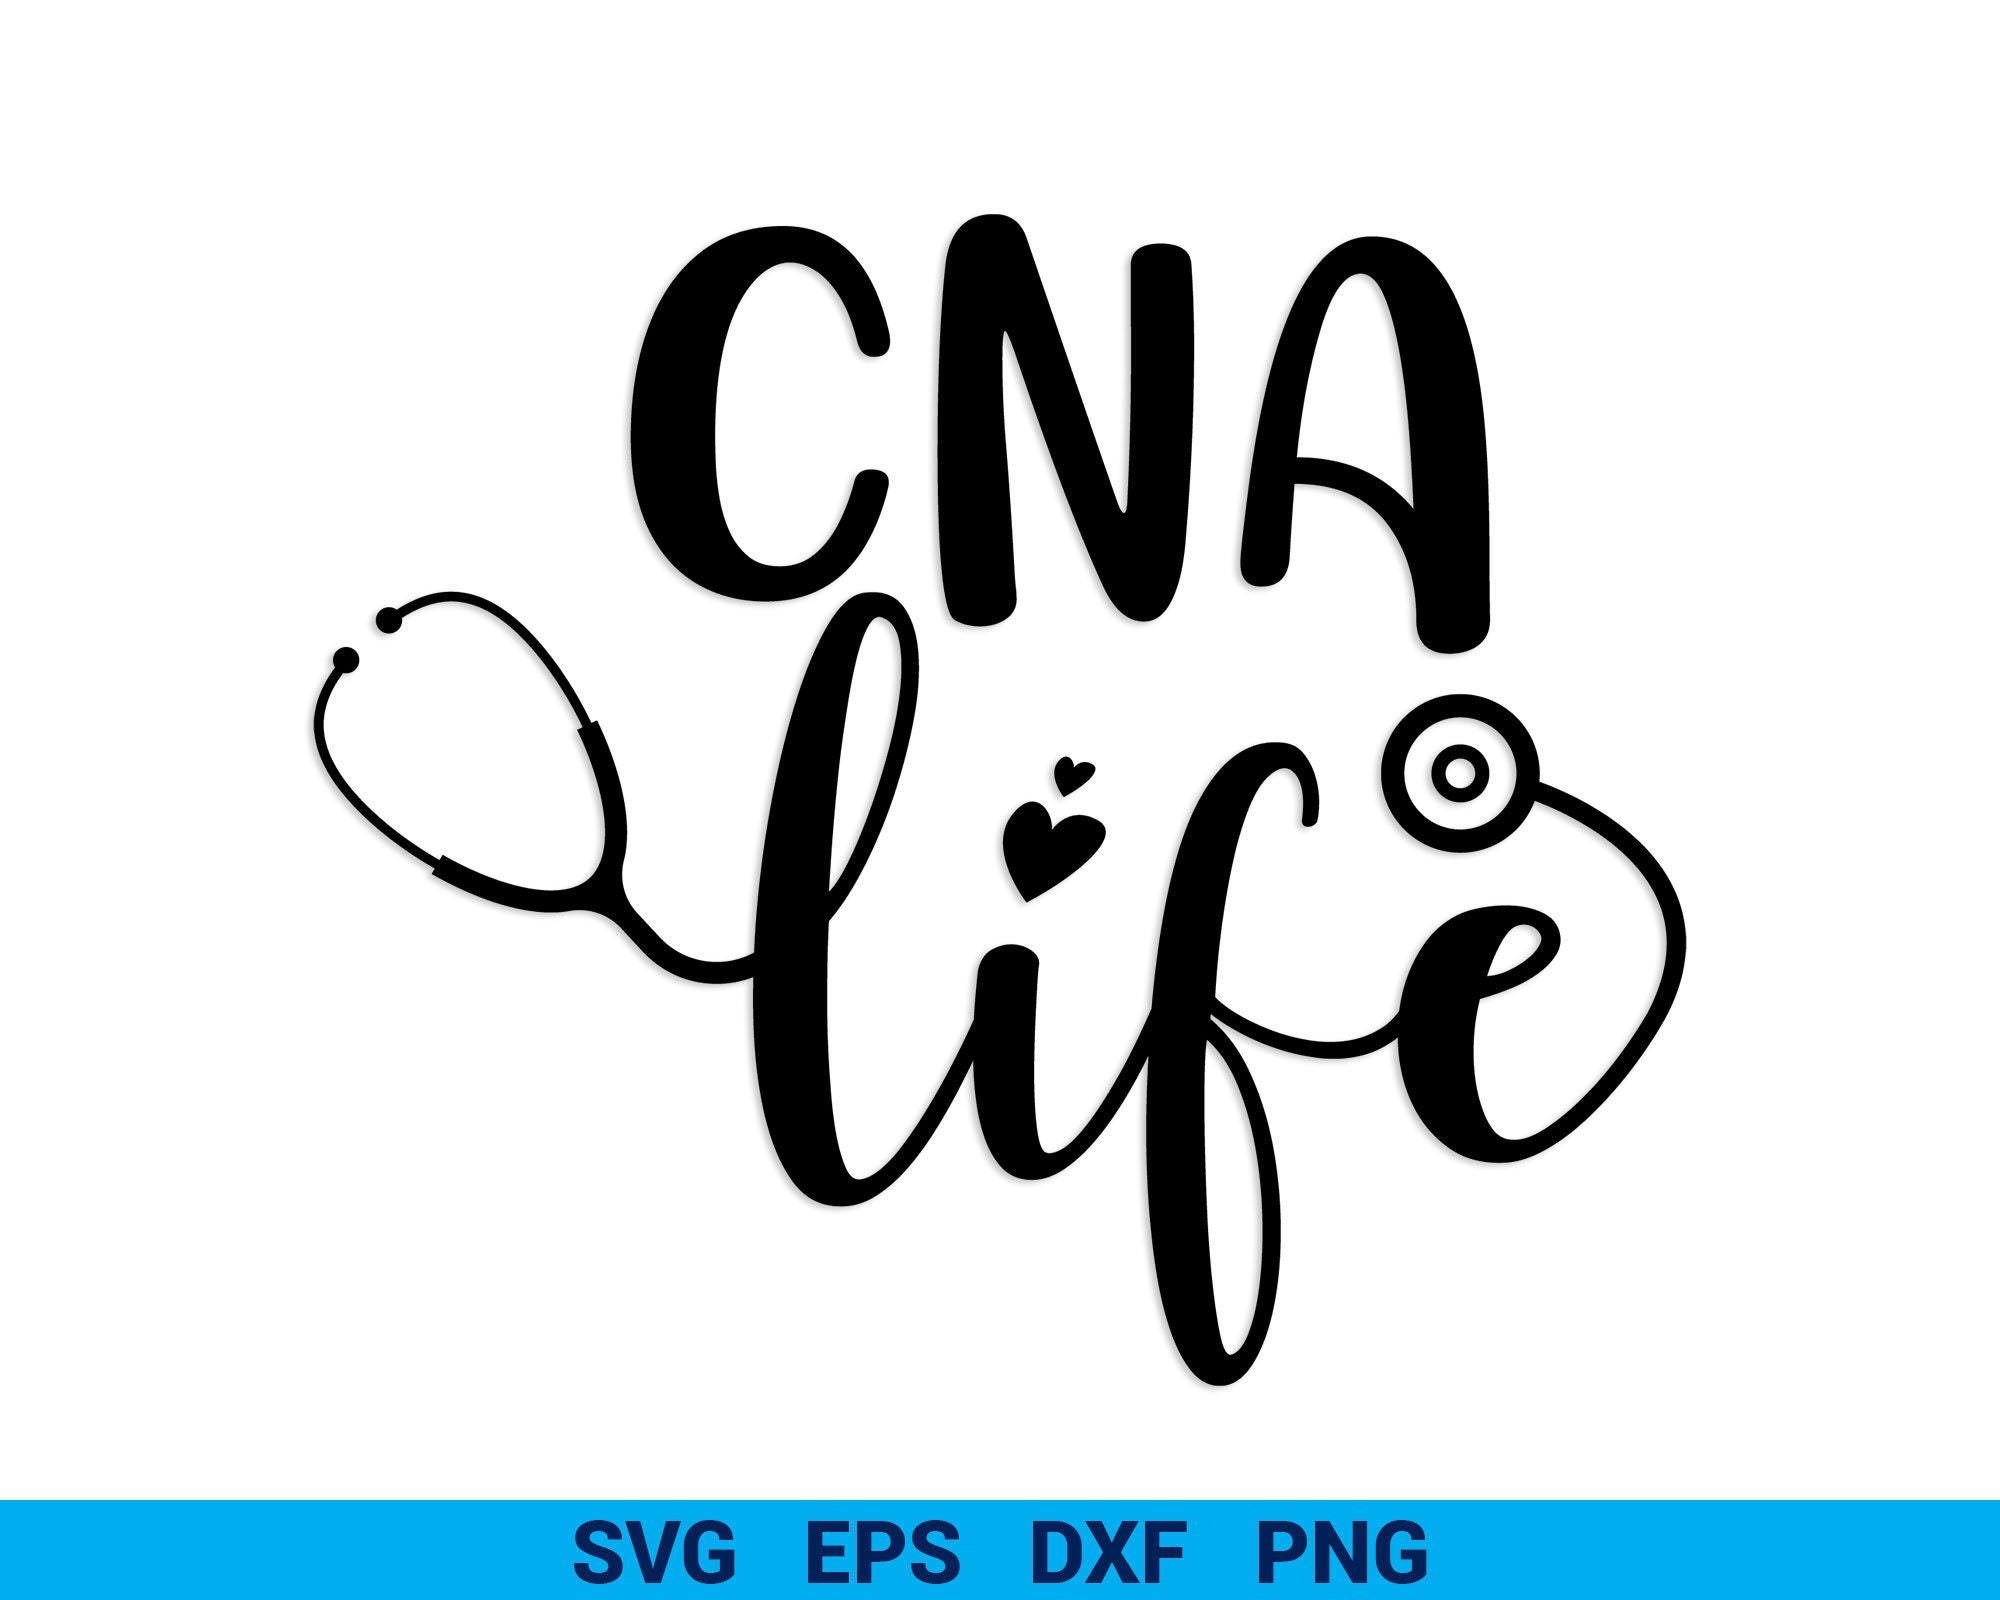 CNA SVG Cut Image. 